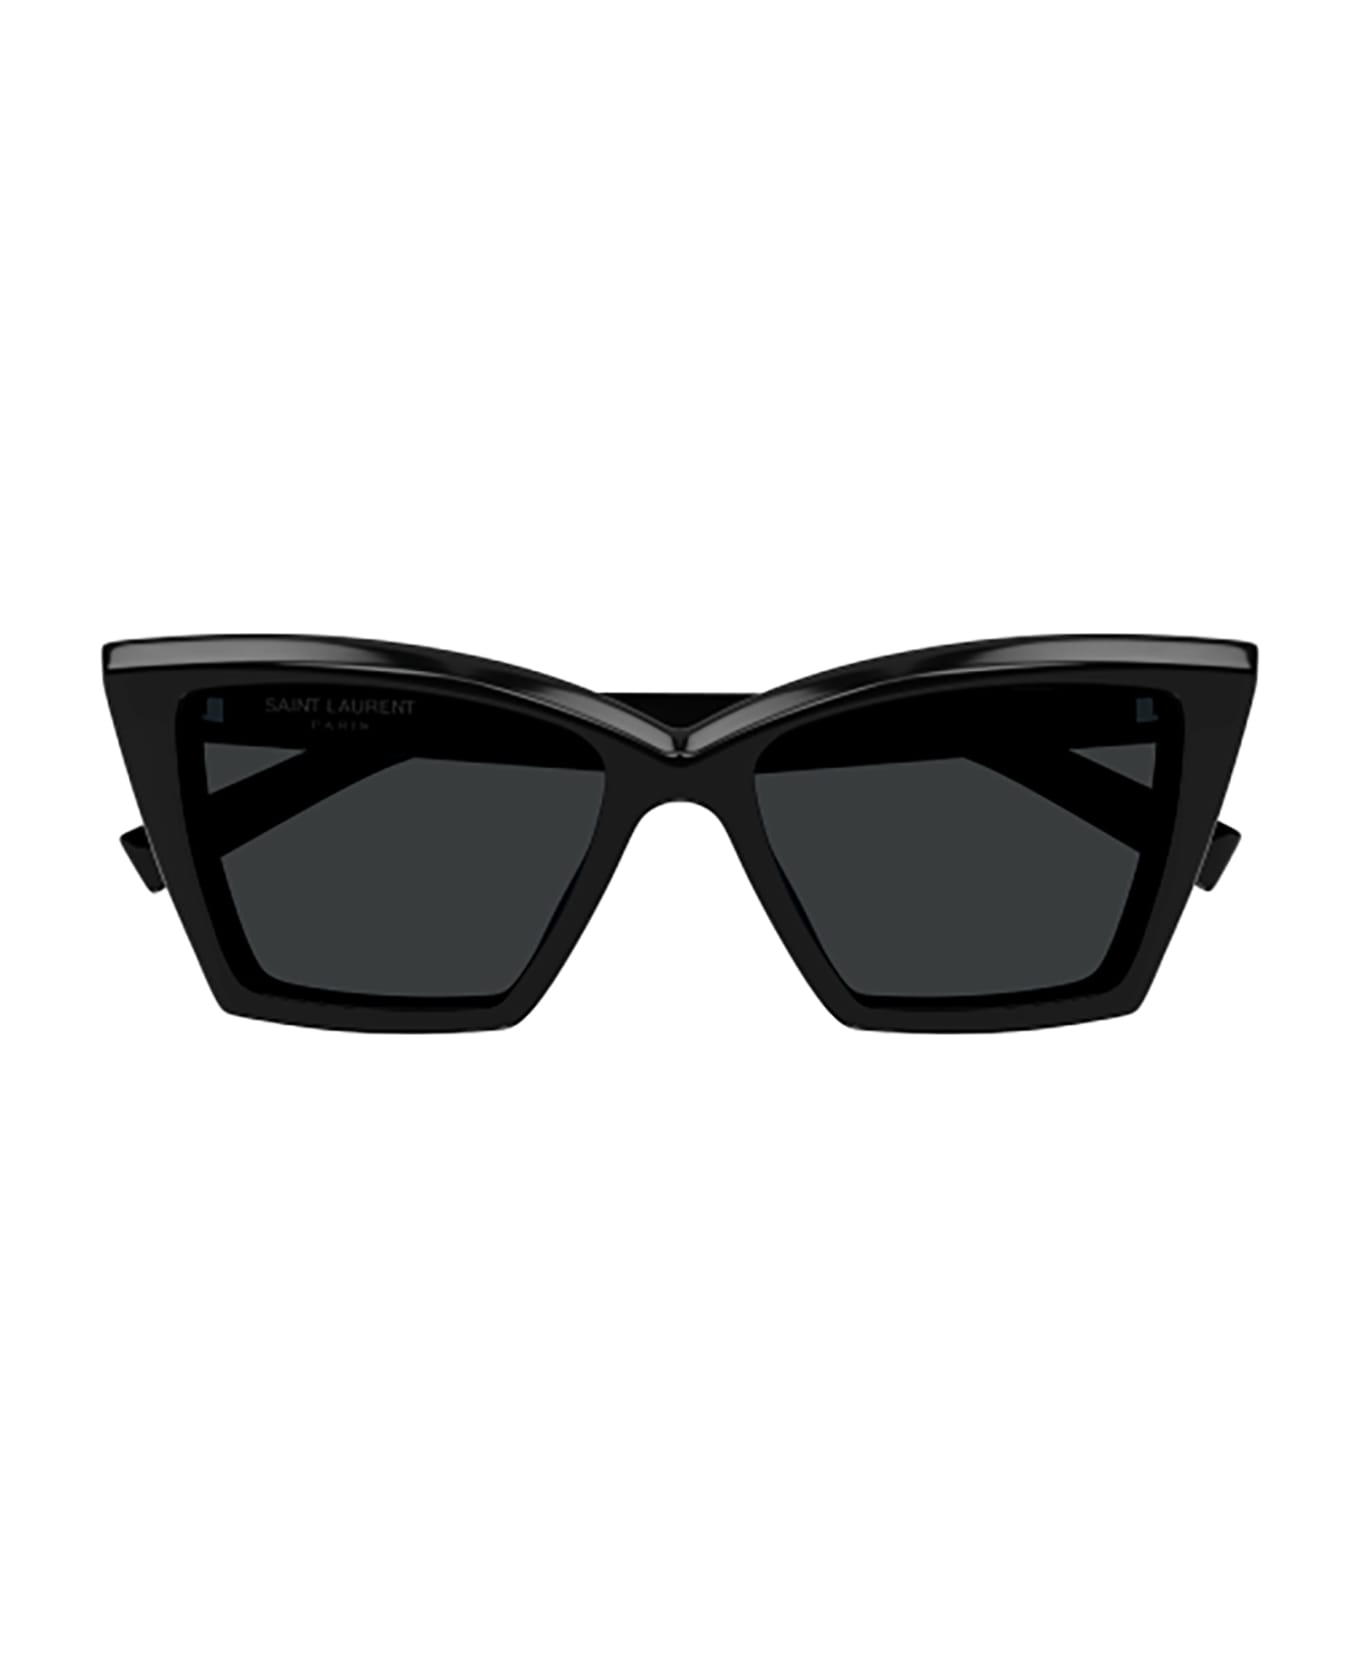 Saint Laurent Eyewear Sl 657 Sunglasses - 001 black black black サングラス